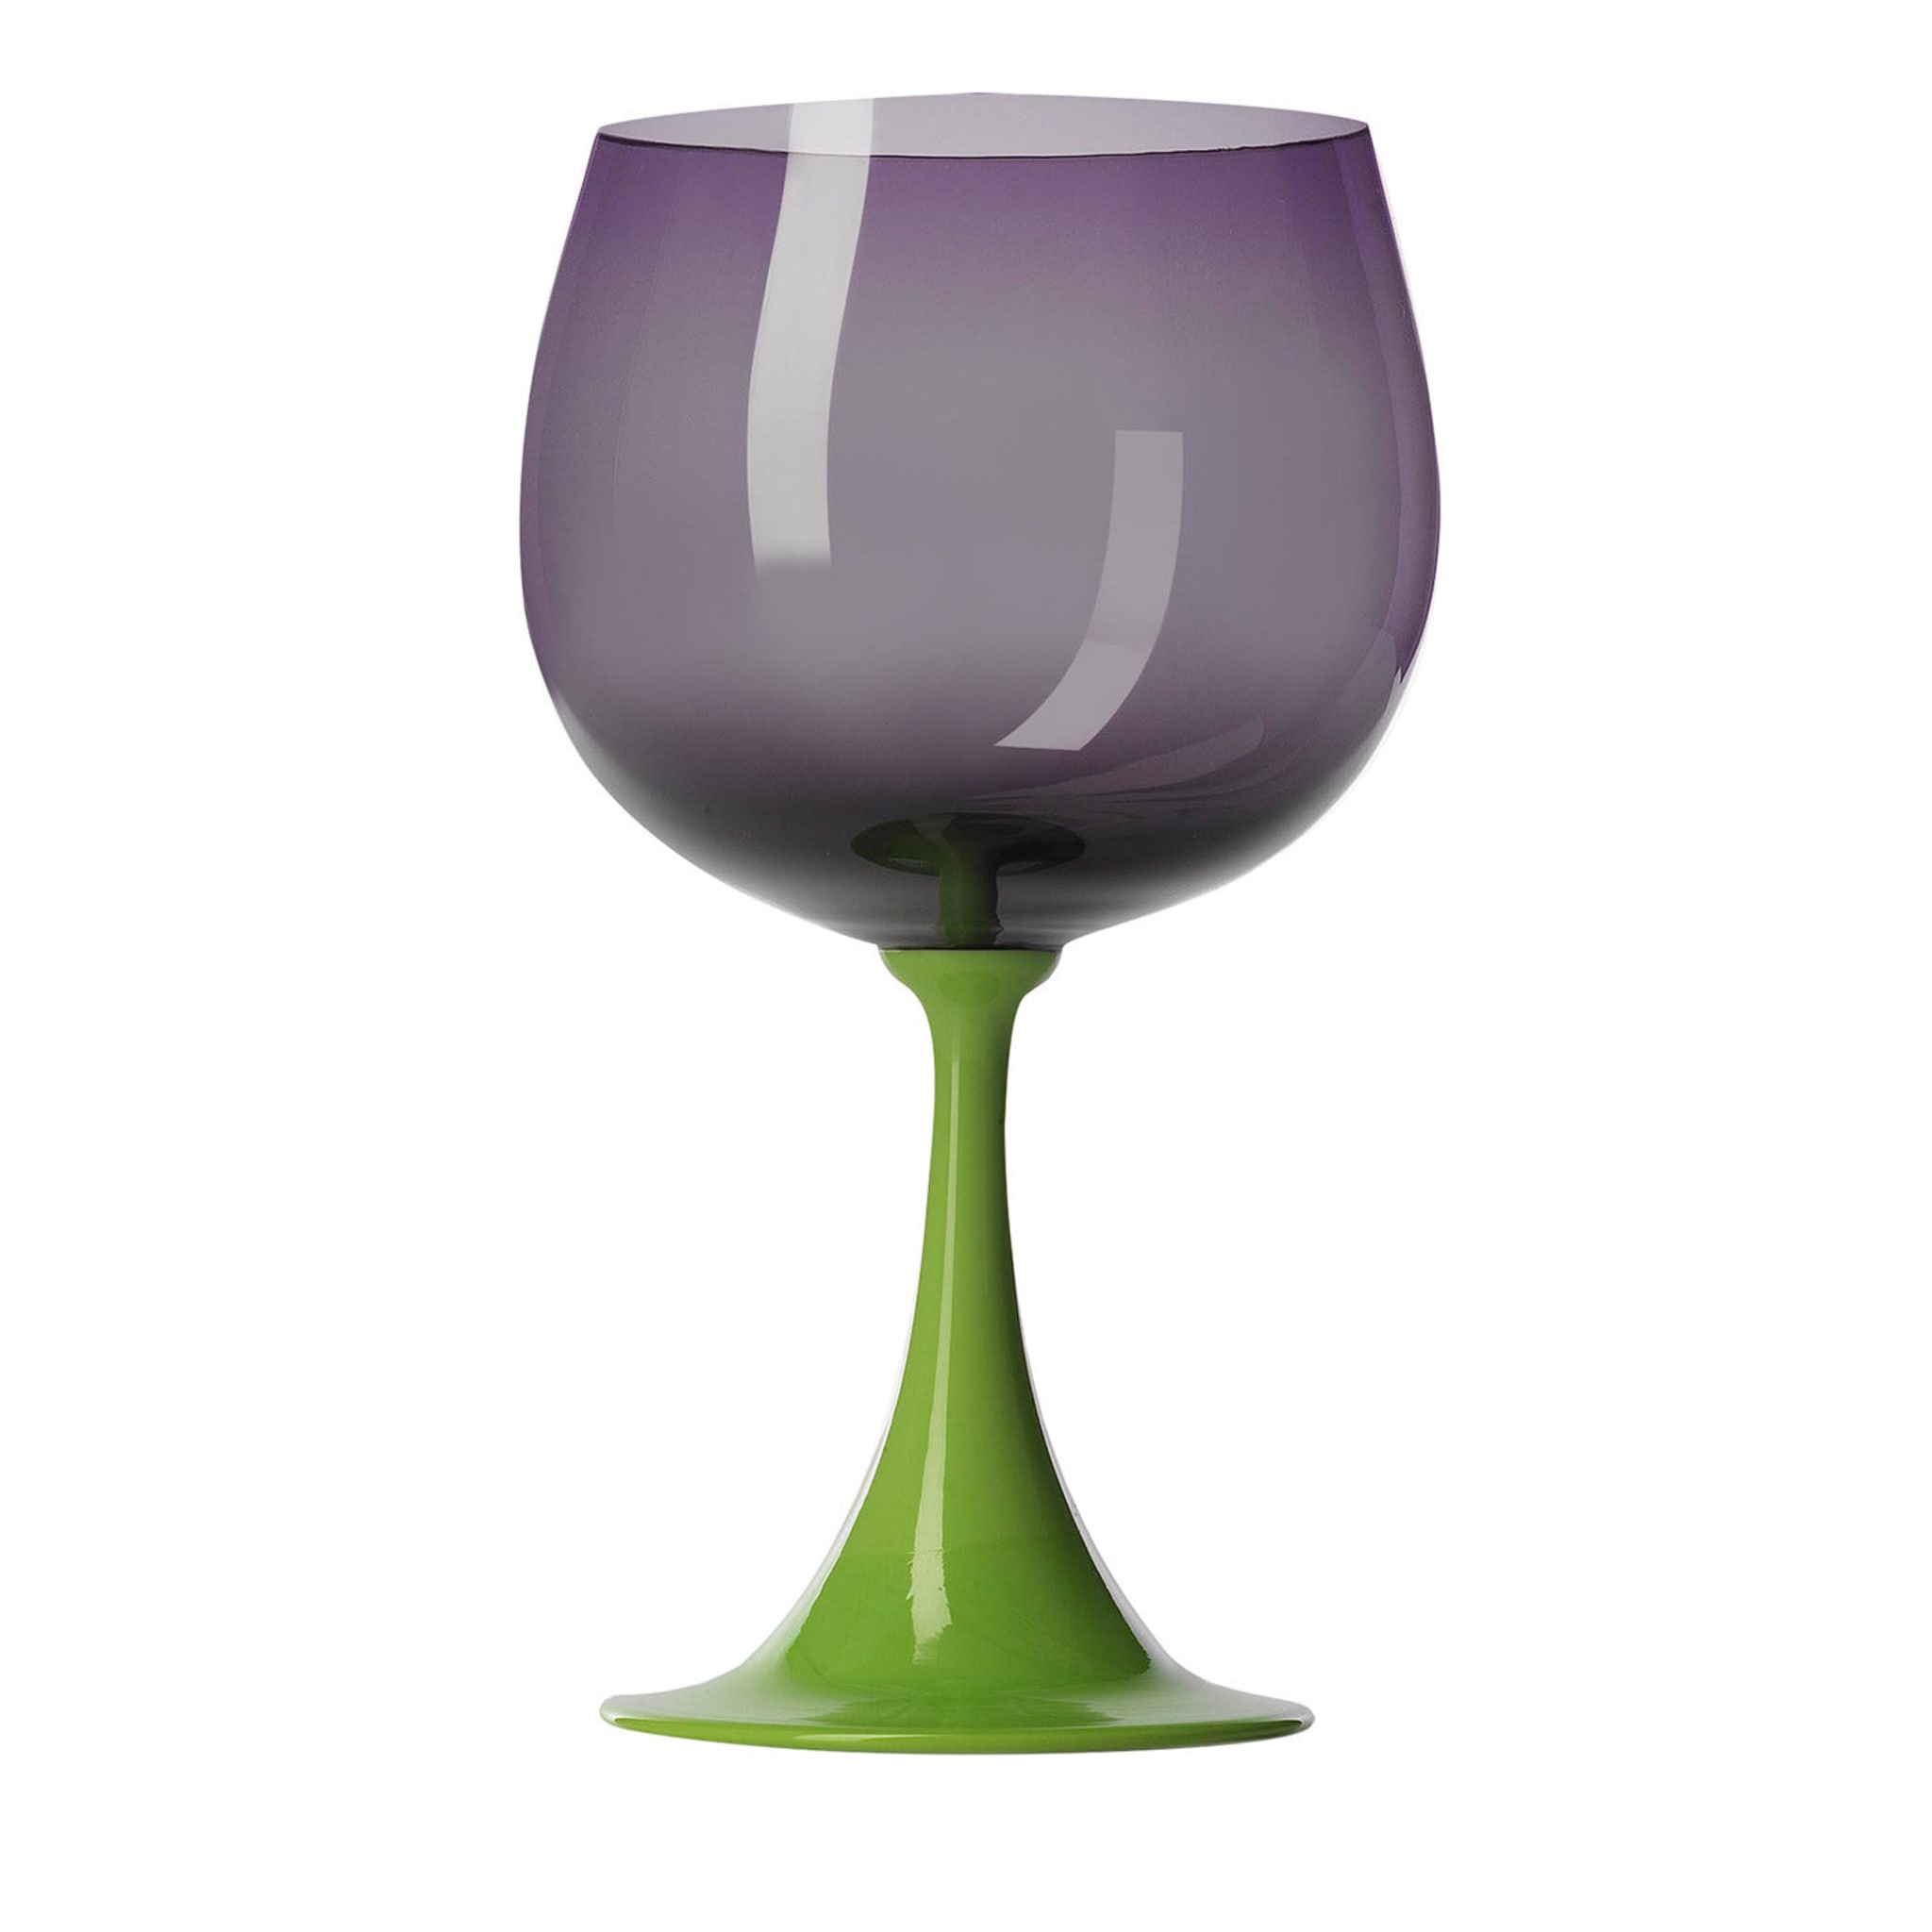 Burlesque Purple Burgundy Glass by NasonMoretti and Stefano Marcato - Main view